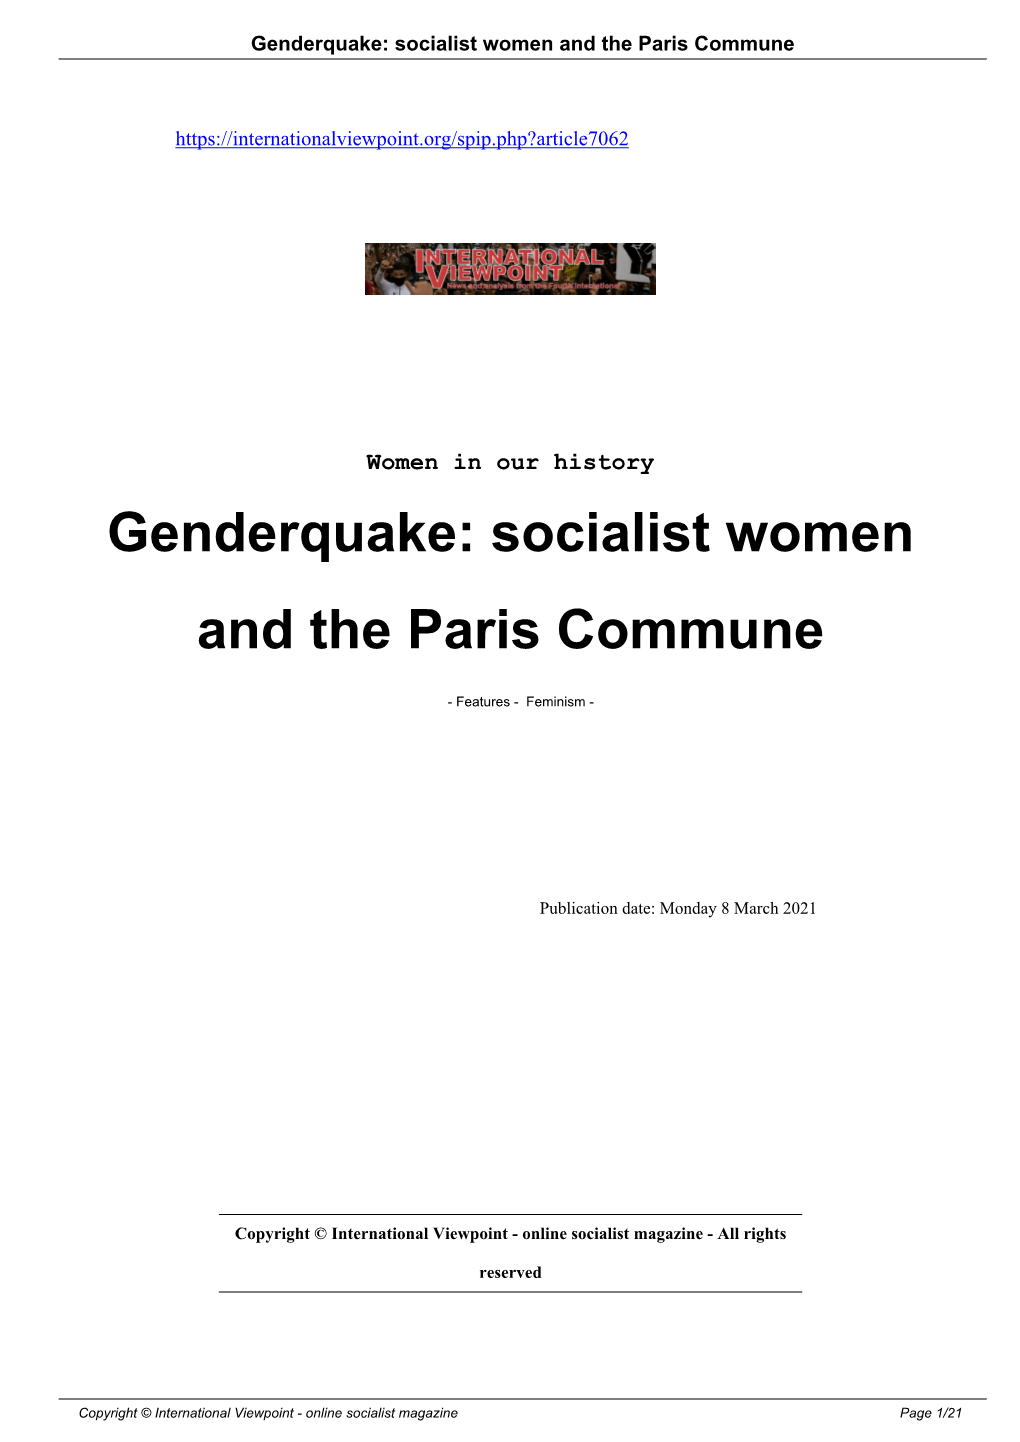 Genderquake: Socialist Women and the Paris Commune